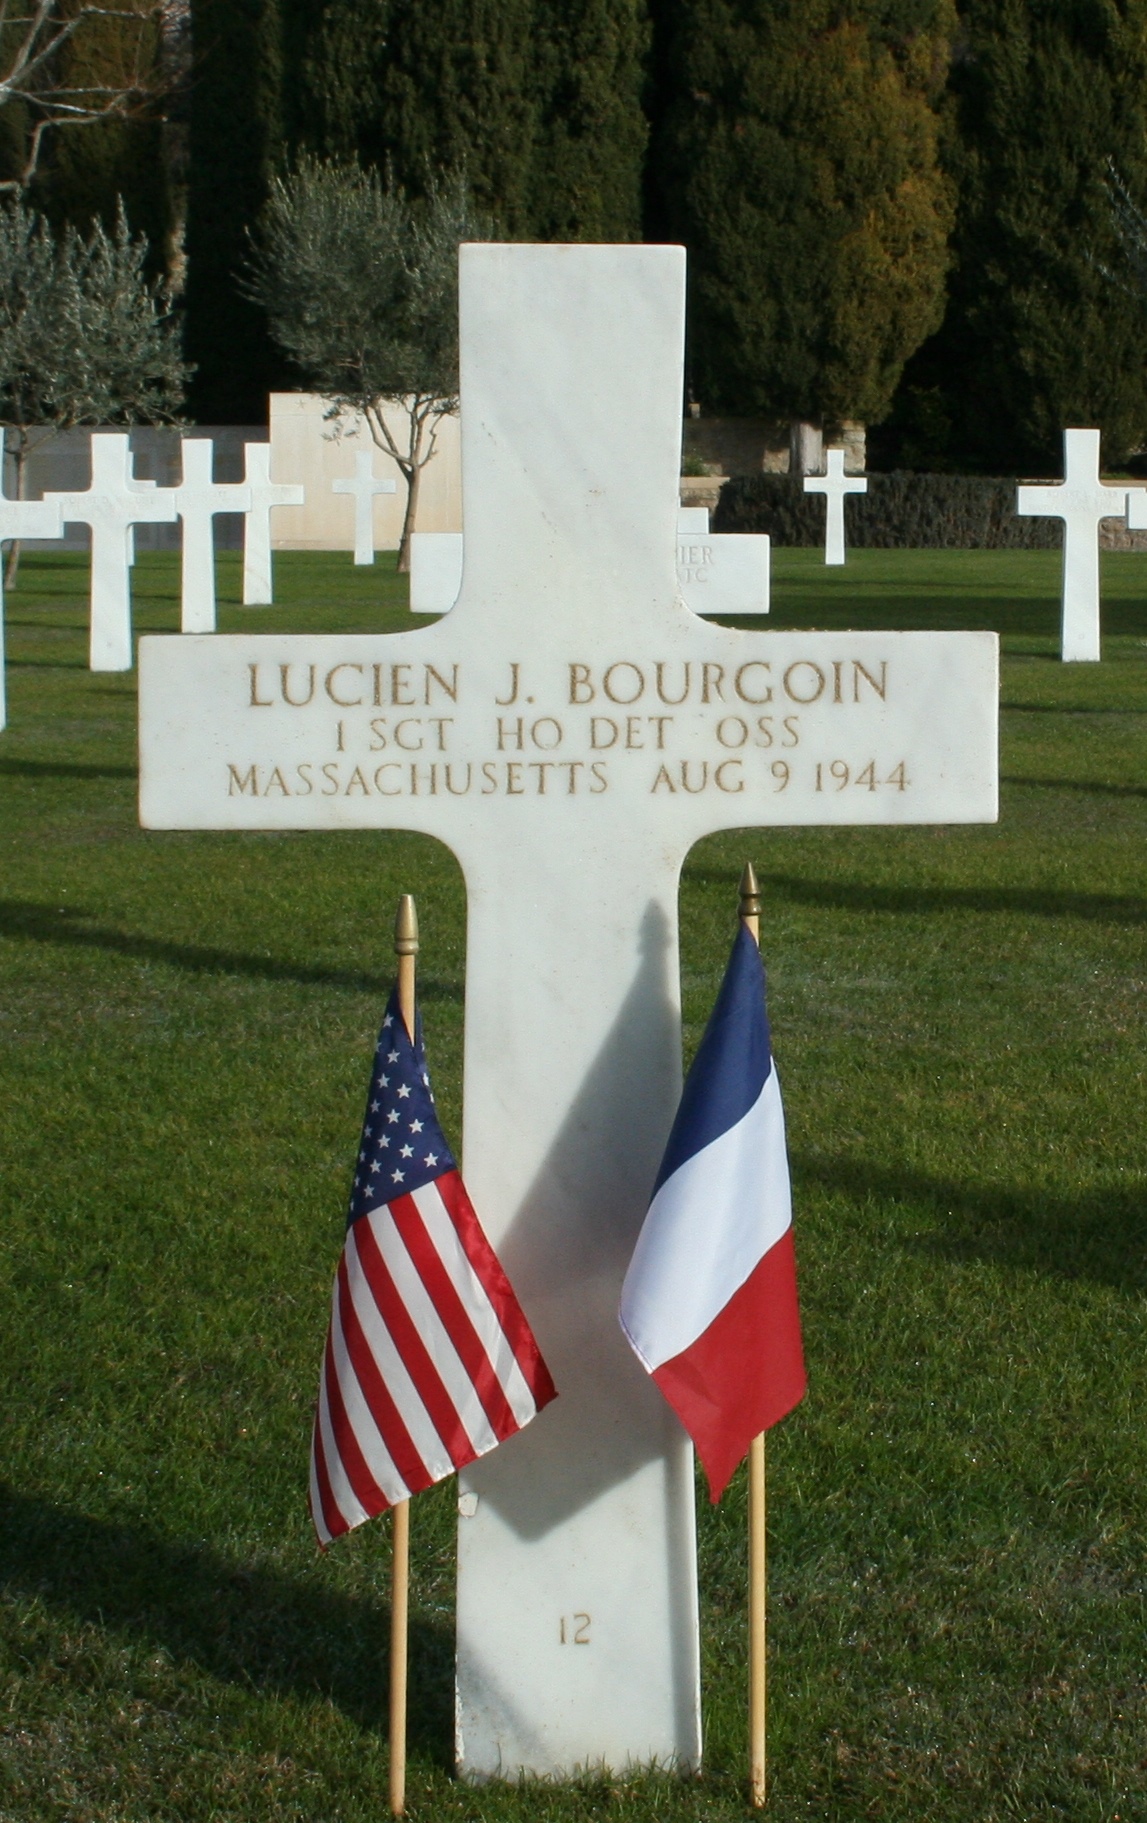  Lucien J. Bourgoin